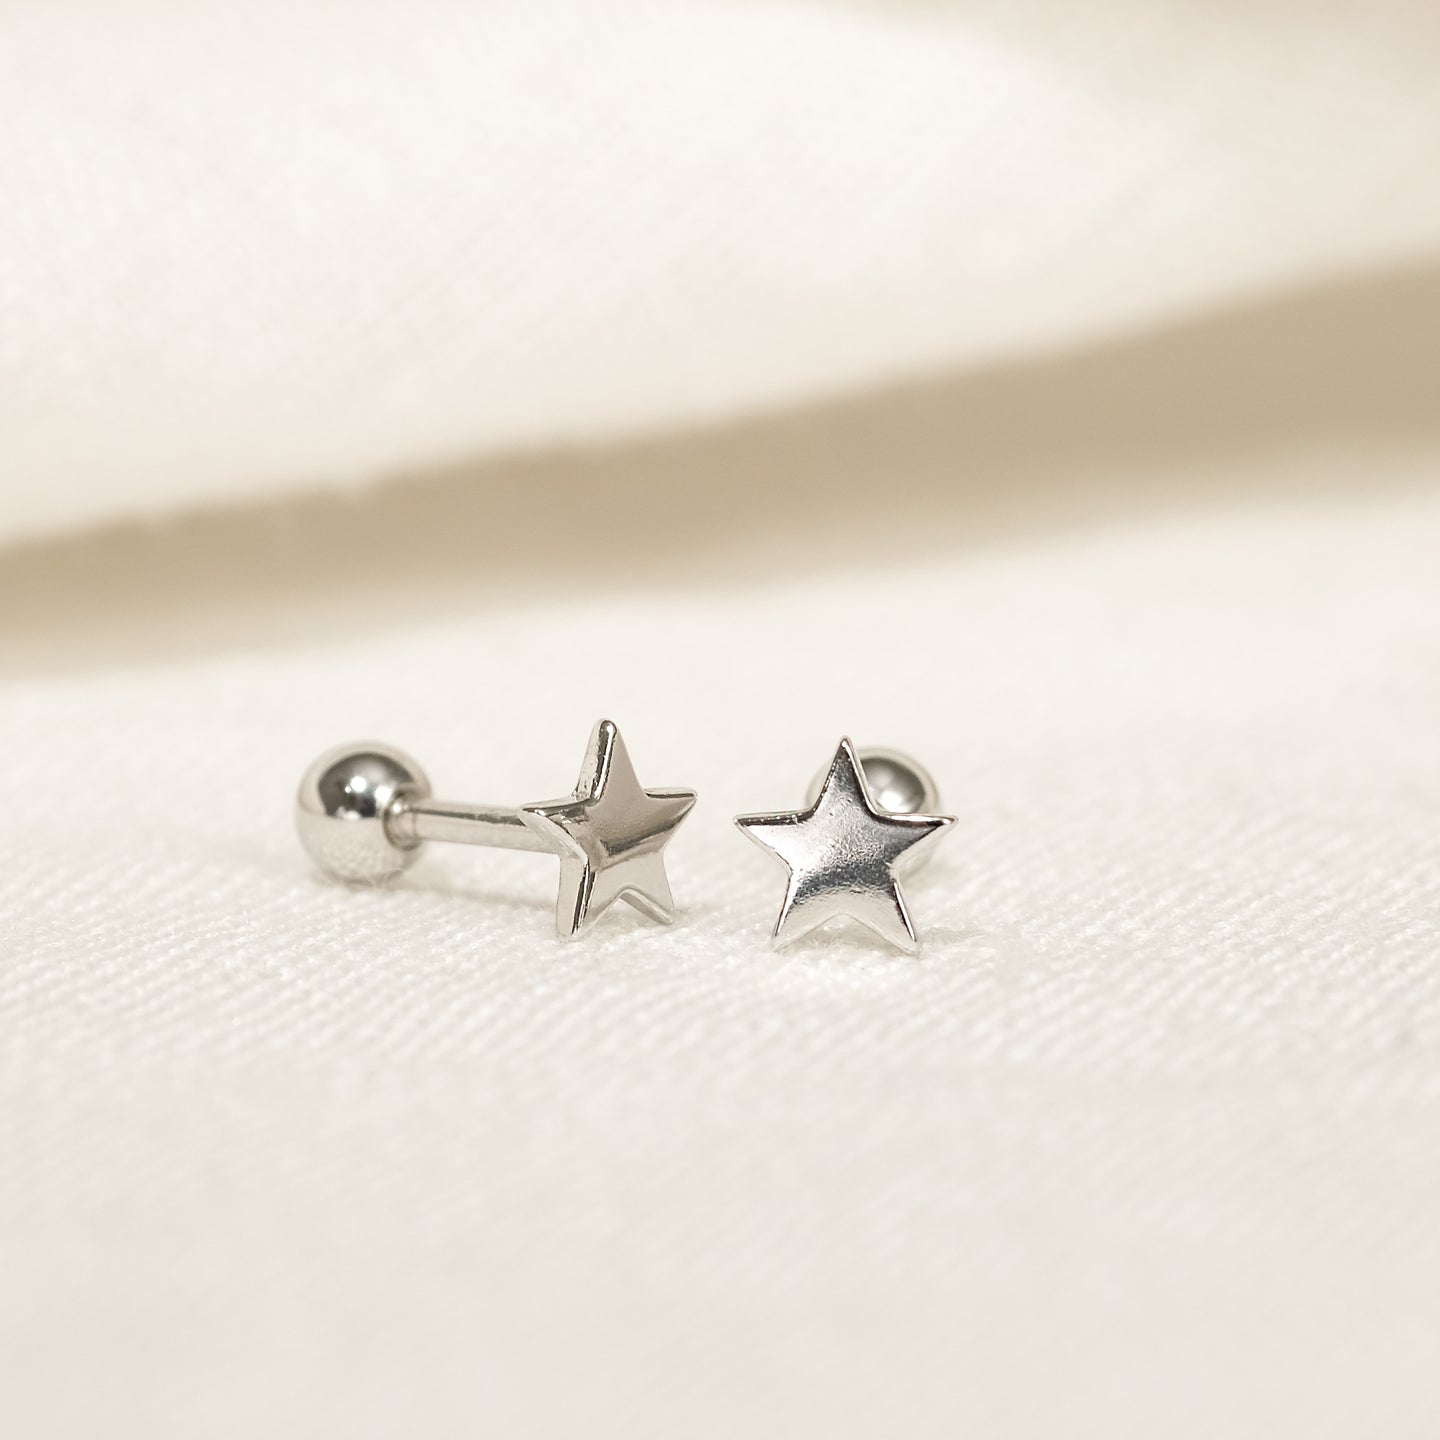 files/esti-stud-earrings-925-sterling-silver-2.jpg